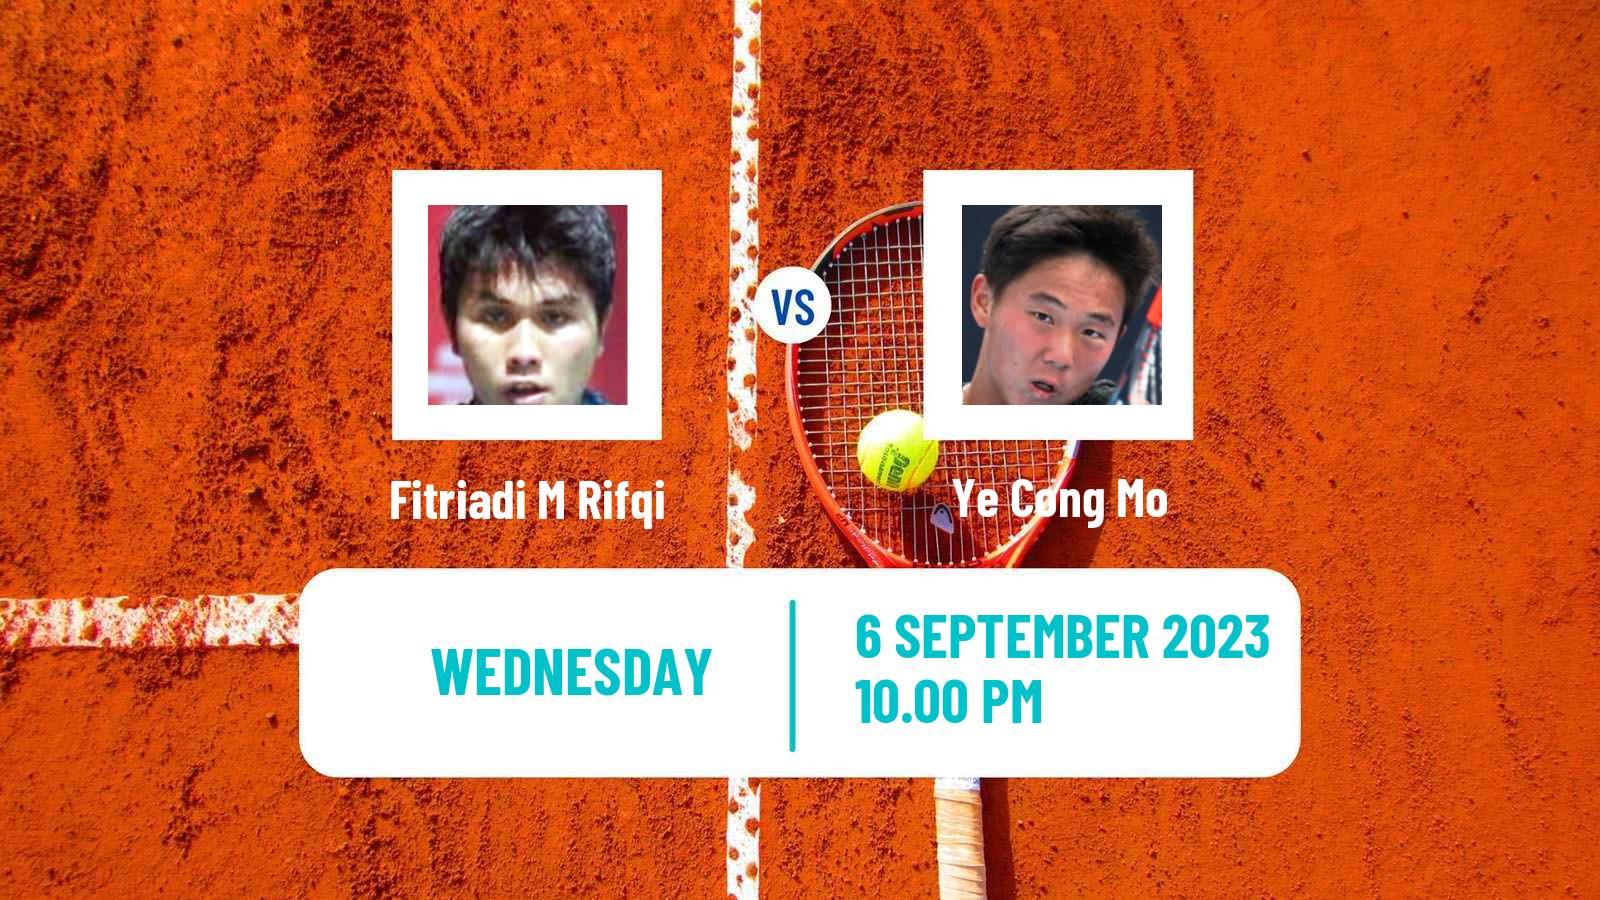 Tennis ITF M25 Hong Kong 2 Men M Rifqi Fitriadi - Ye Cong Mo